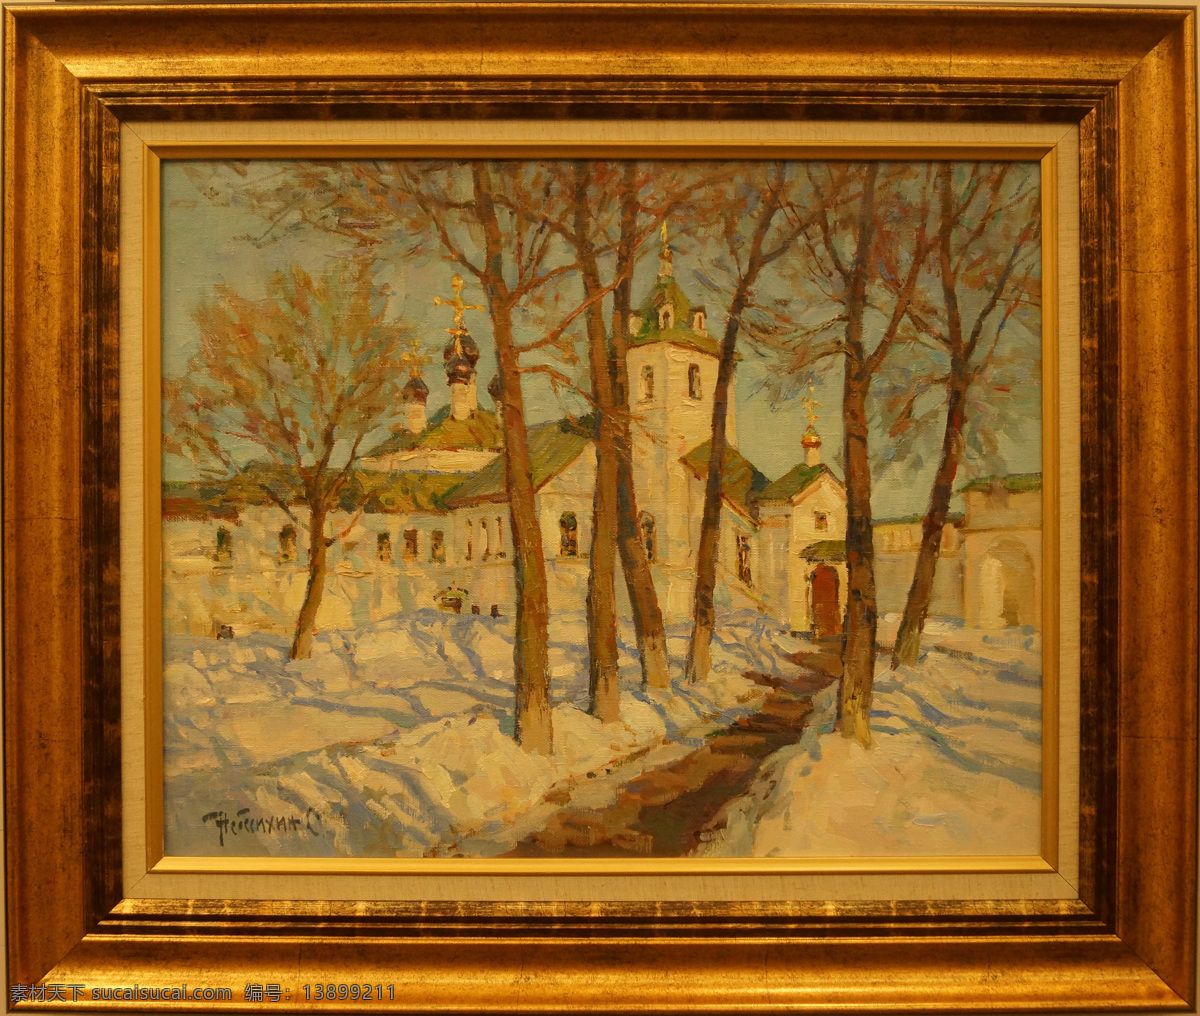 城堡 俄罗斯 风景 画框 绘画 绘画书法 美术绘画 色彩 冬日 午后 油画 设计素材 模板下载 雪景 树 天空 文化艺术